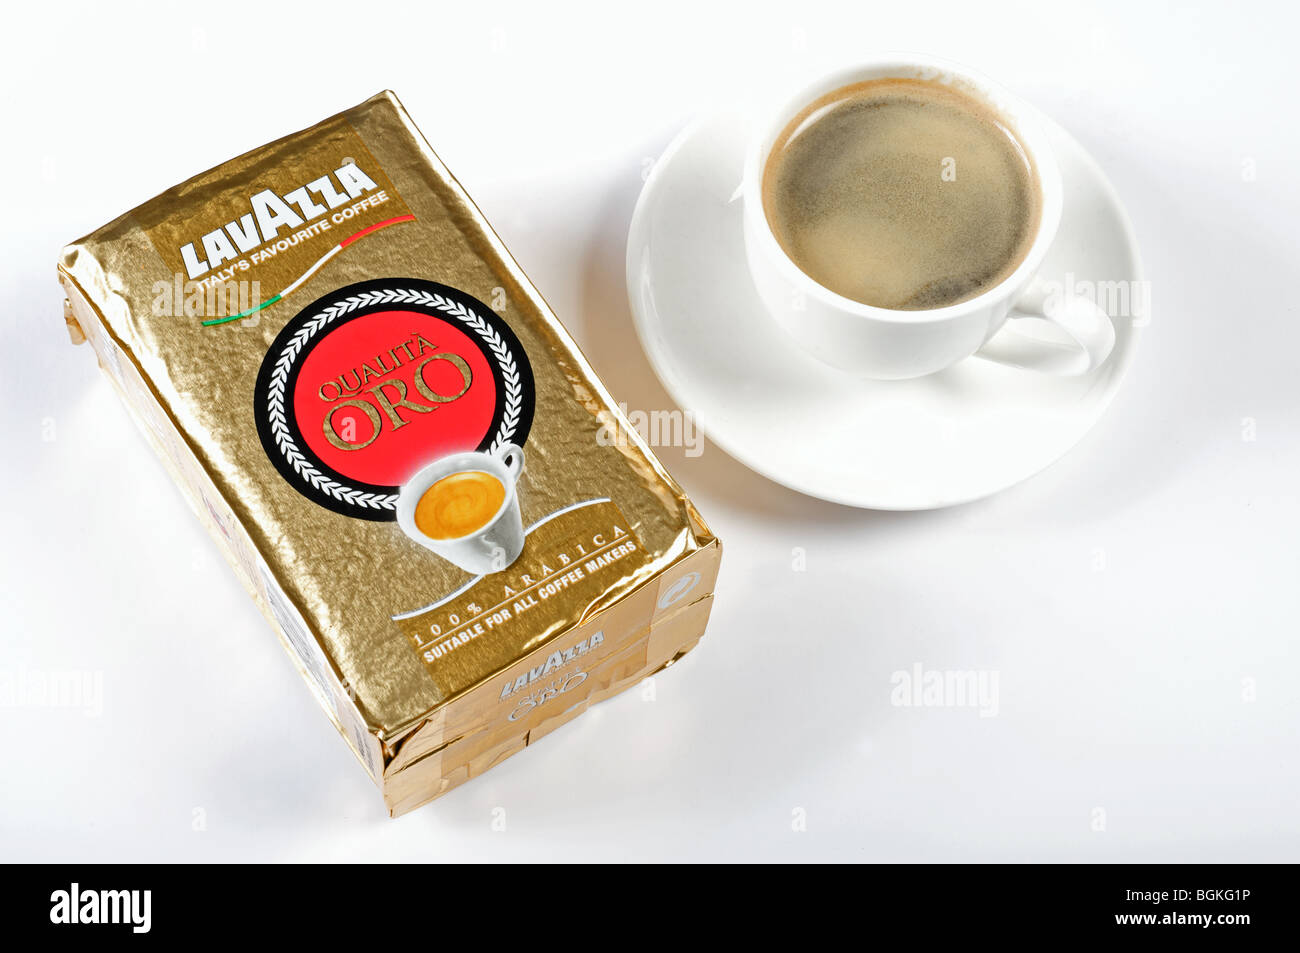 Espresso shot of Lavazza coffee Stock Photo - Alamy